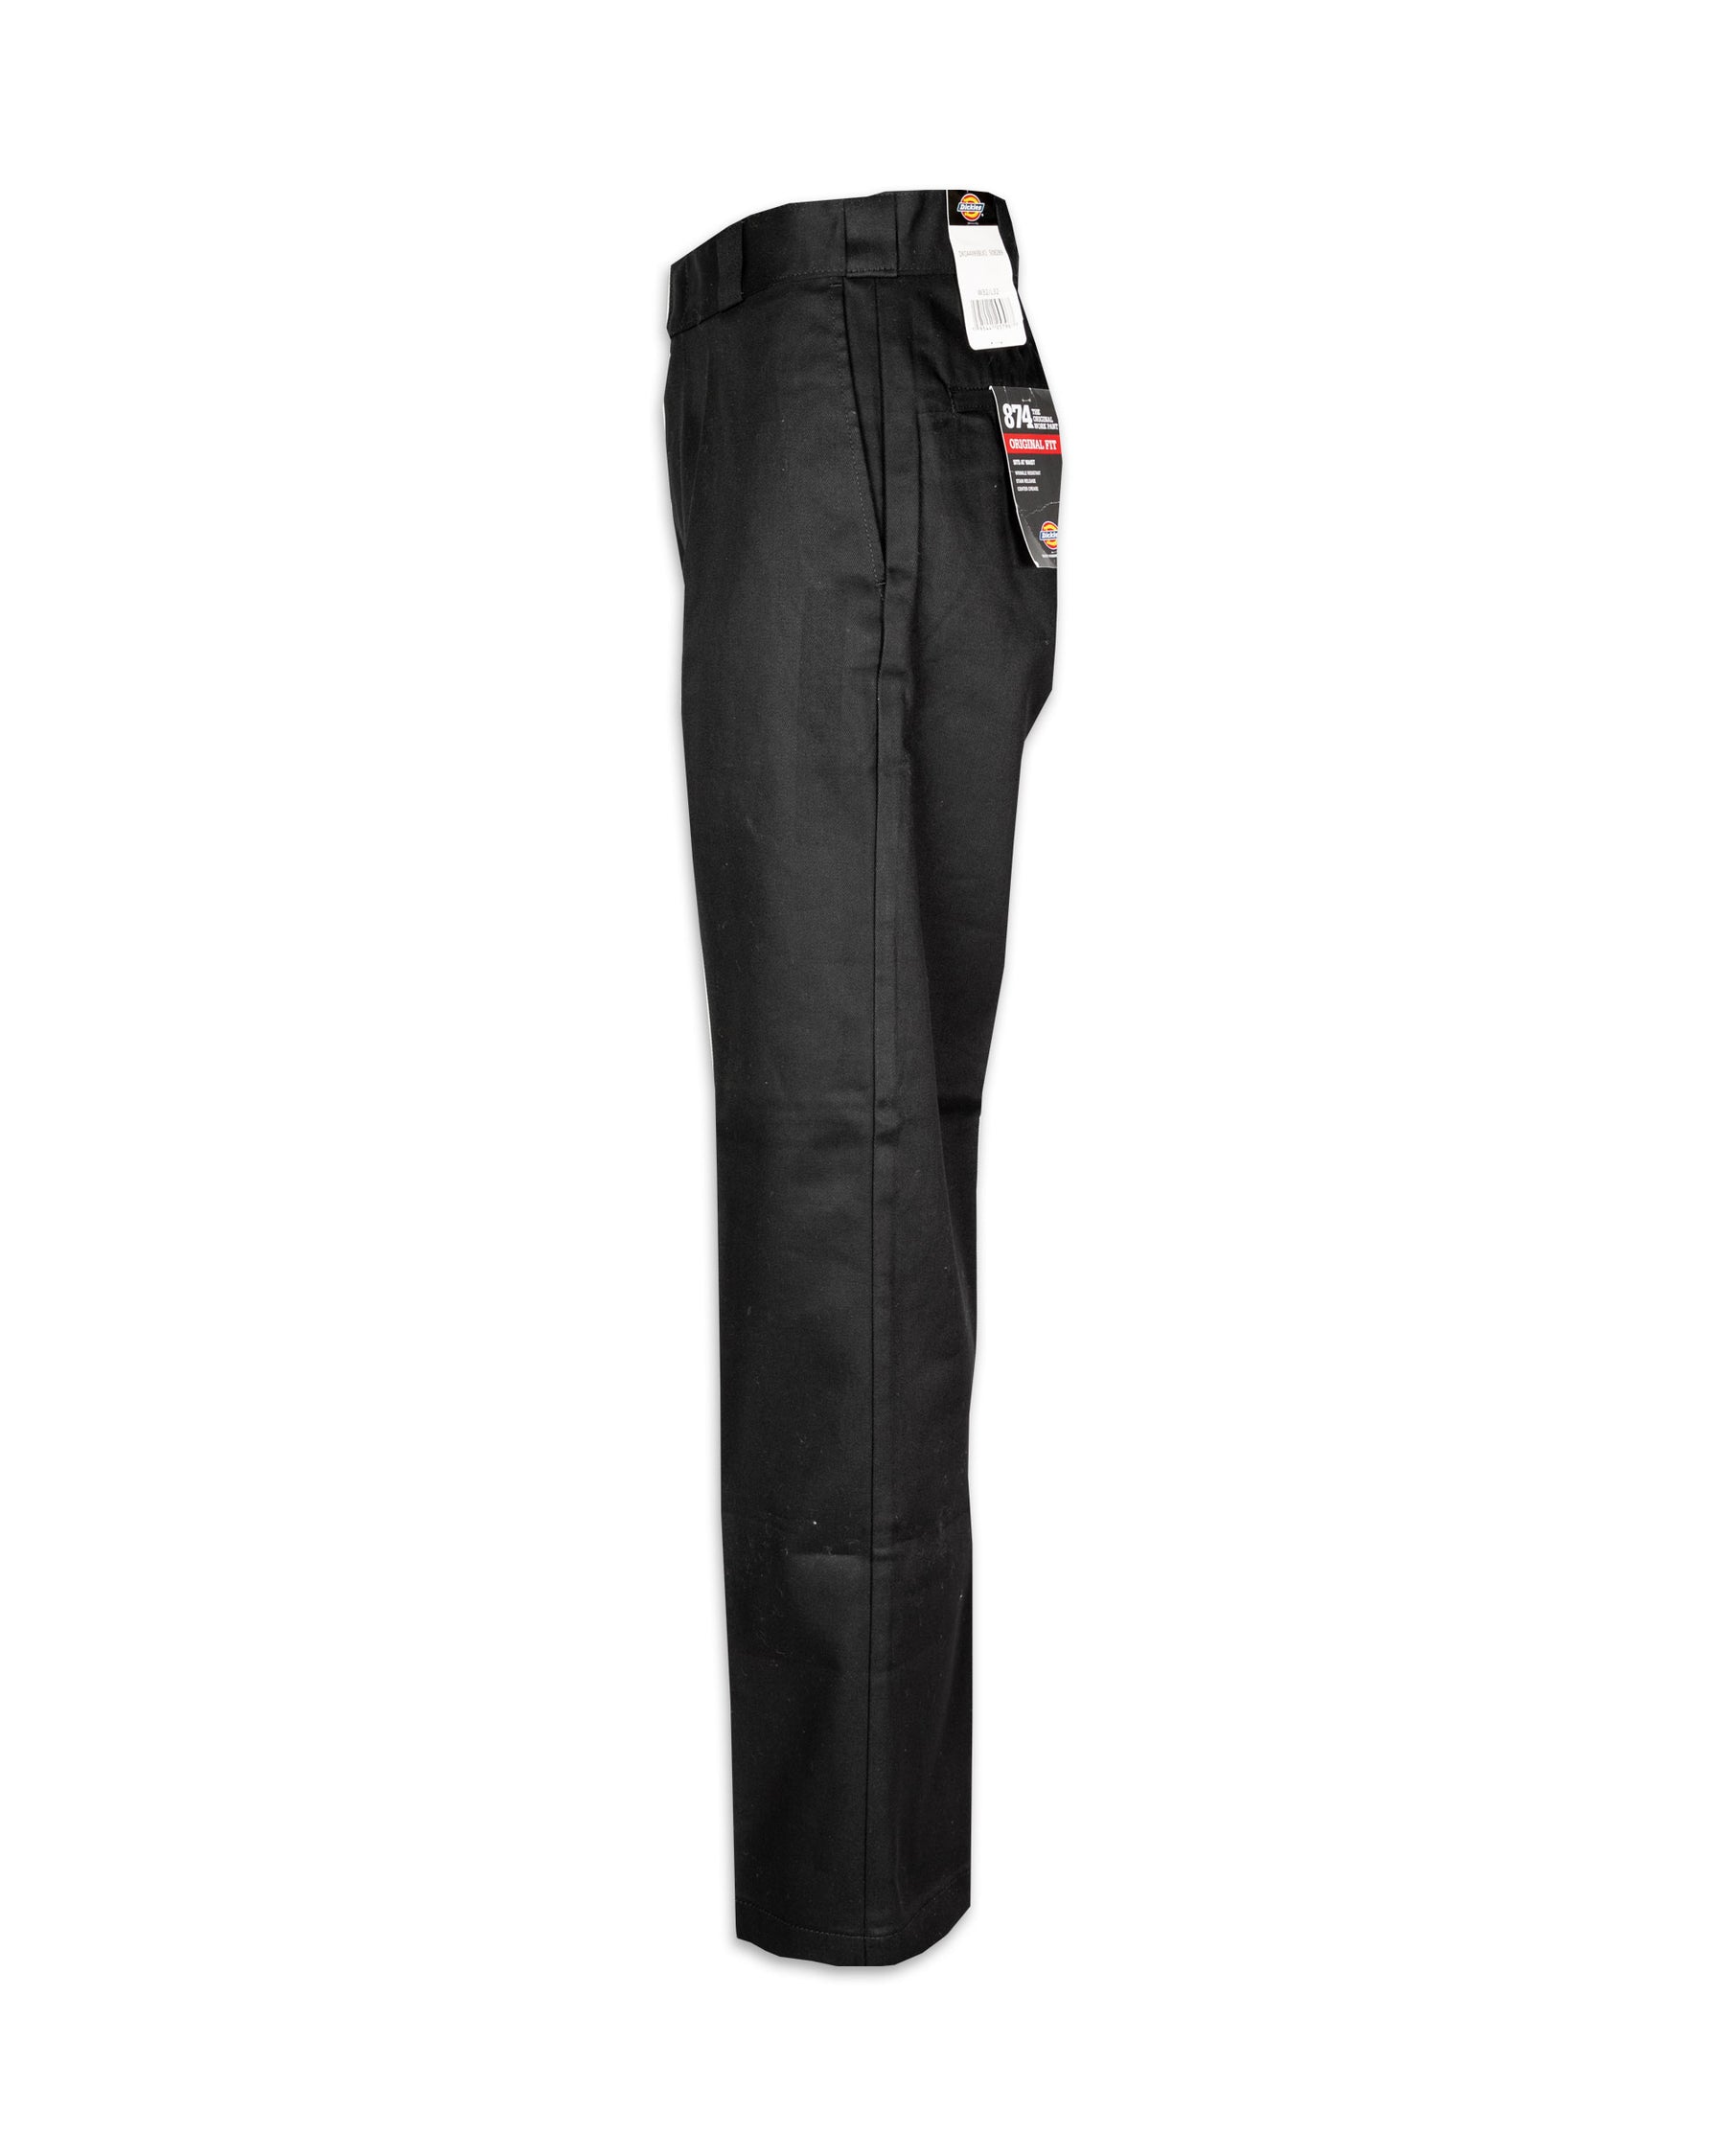 Pantalone Dickies 874 Work Pant Rec Black